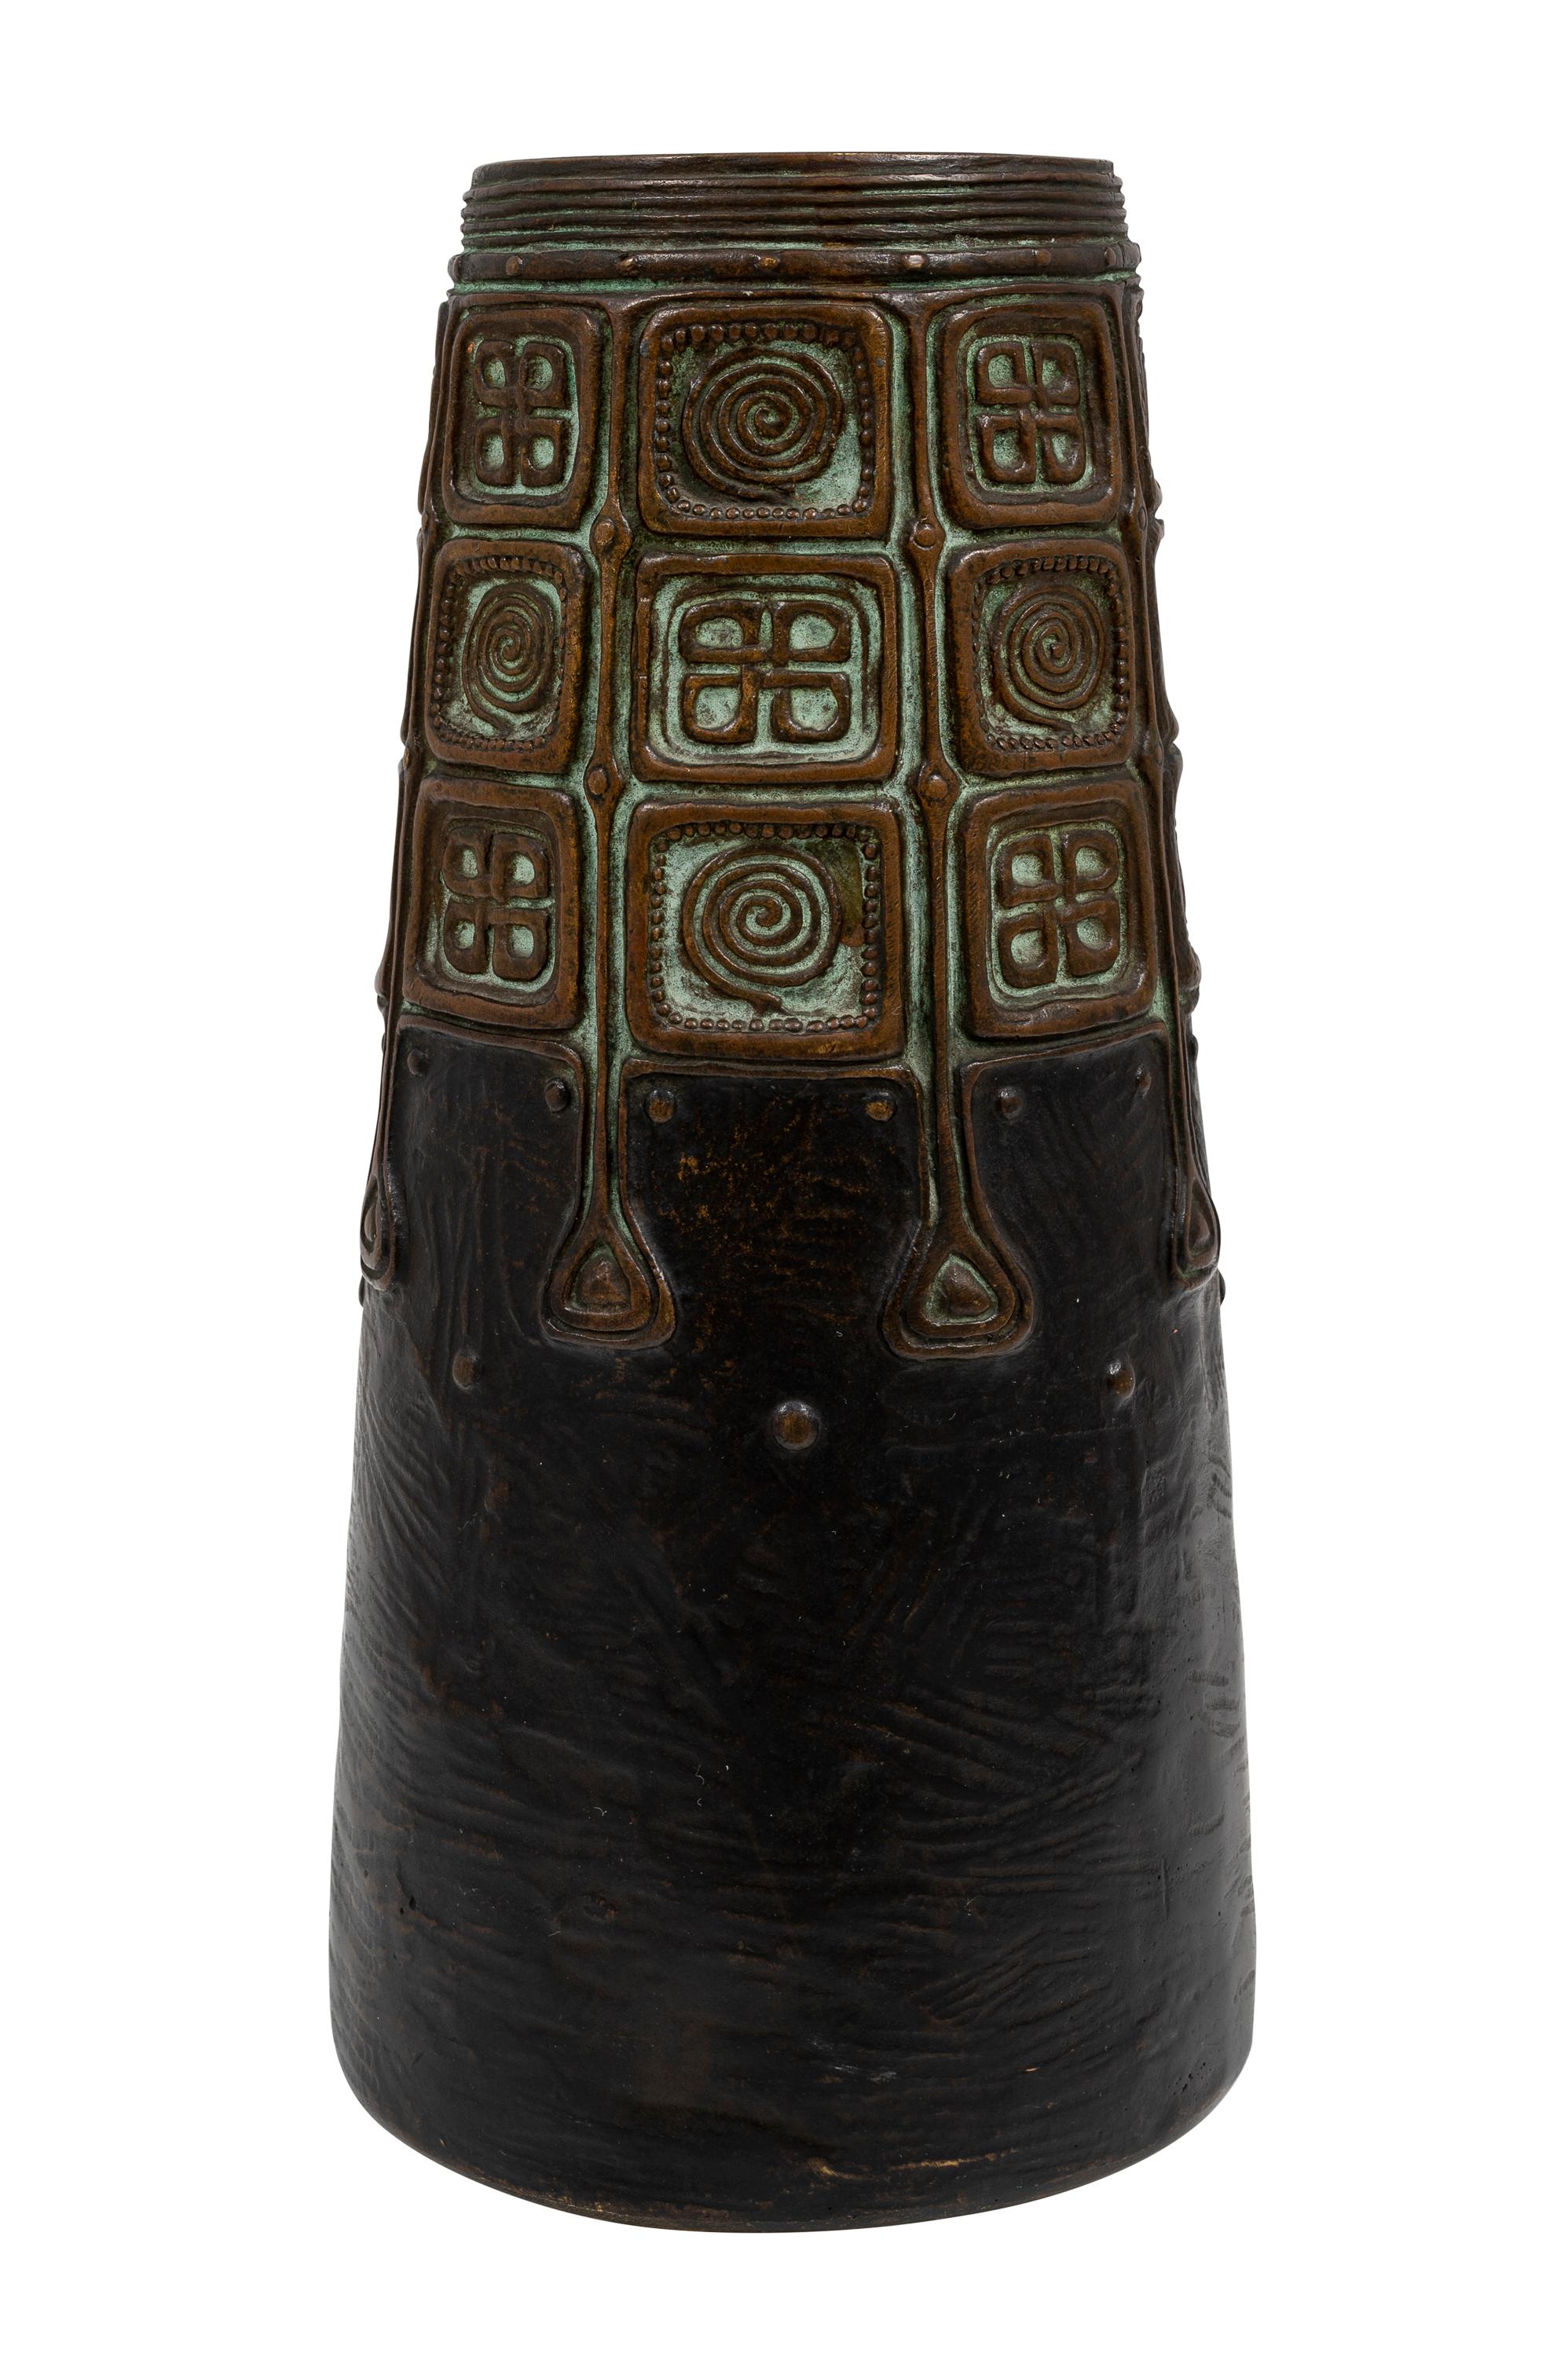 Vase avec motif celtique, conçu par Gustav Gurschner, fabriqué par K.K. Kunst-Erzgiesserei Wien, ca. 1906, Jugendstil autrichien, Bronze patiné, Art nouveau viennois

Autour de 1900, l'Autriche connaît un changement dans le domaine de l'art et de